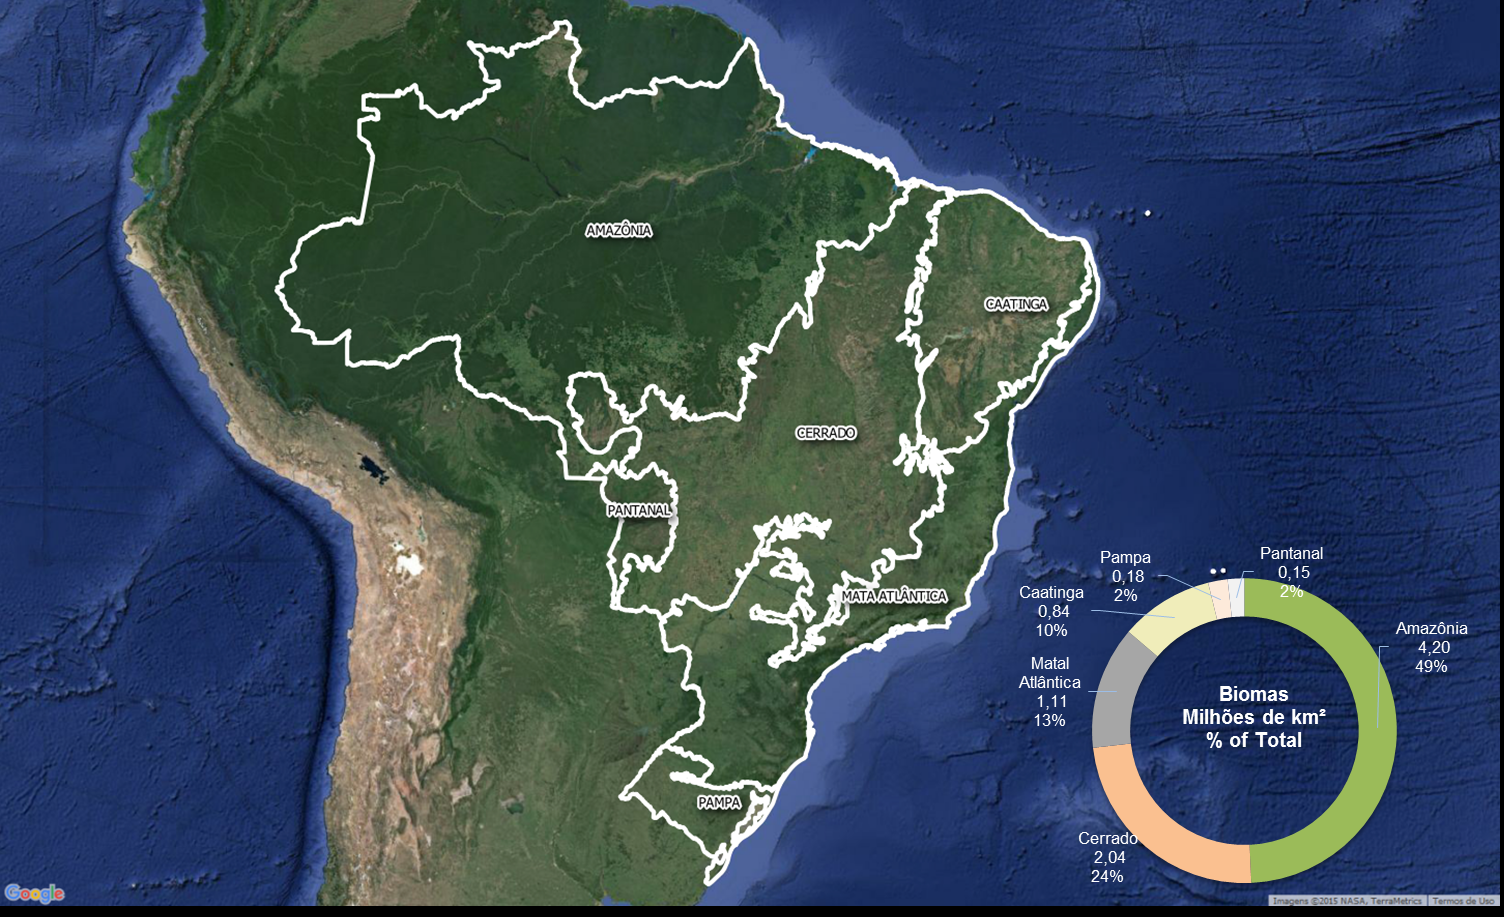 Figura 1. Limite dos biomas brasileiros. Fonte: Adaptado de MCT, 2010 Os maiores biomas brasileiros são a Amazônia (49% da extensão do país), o Cerrado (24%) e a Mata Atlântica (13%).